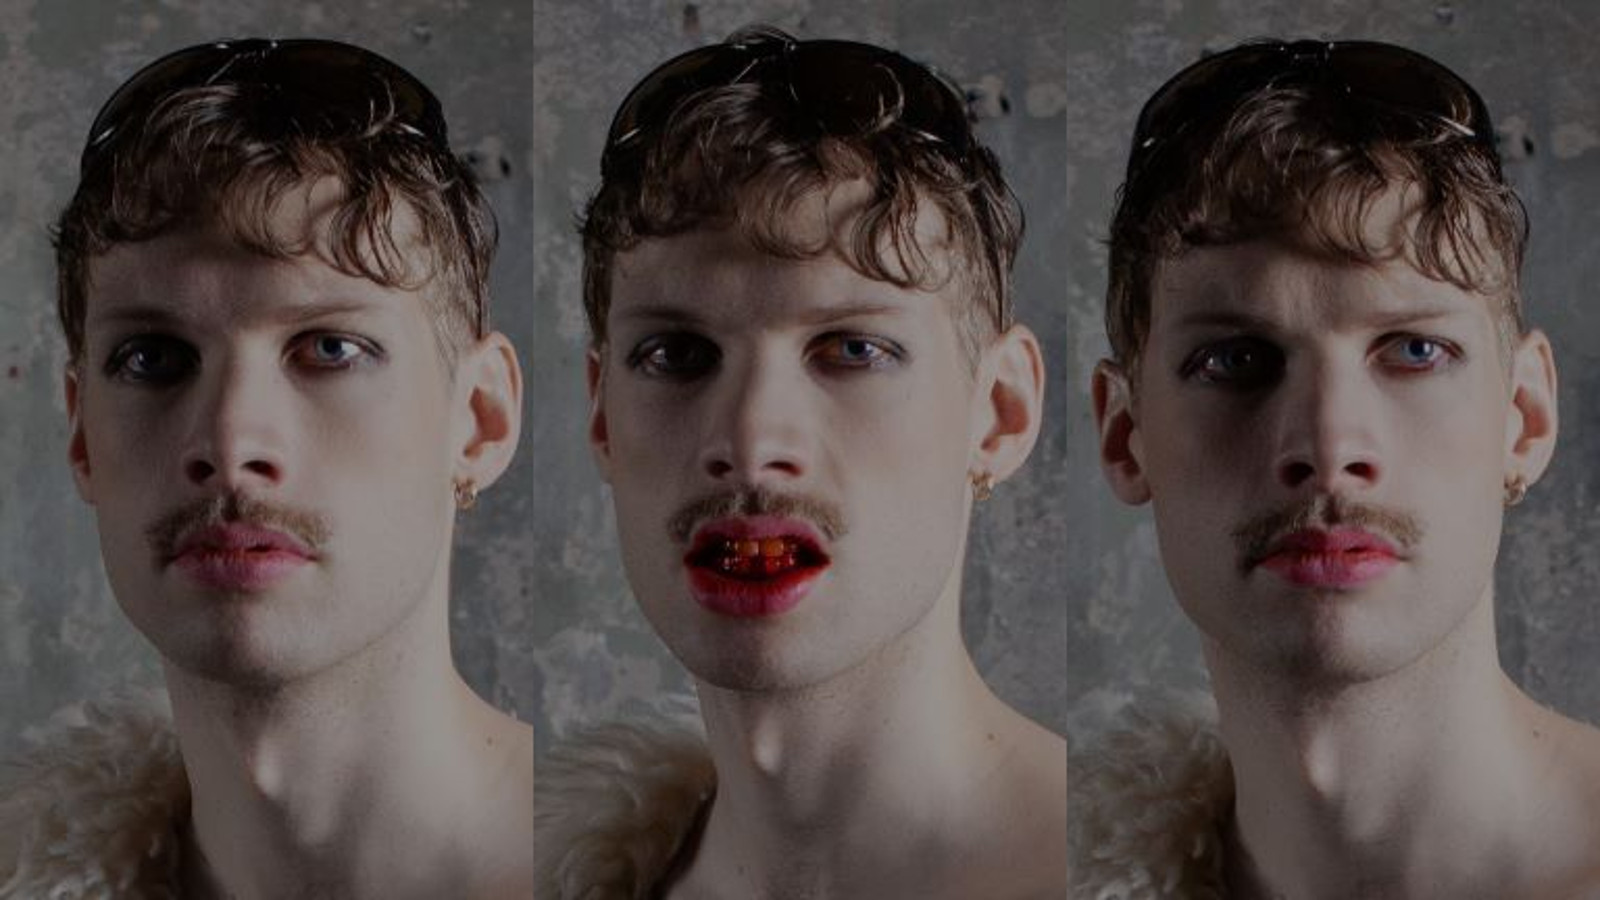 Kuvassa on kolme nuoren miehen kasvokuvaa ja niissä on oikeassa katse vasemmalle, keskellä katse keskelle ja kieli näkyy hieman, ja oikealla se katse oikealle.  Miehellä on punaista huulipunaa ja pienet viikset.